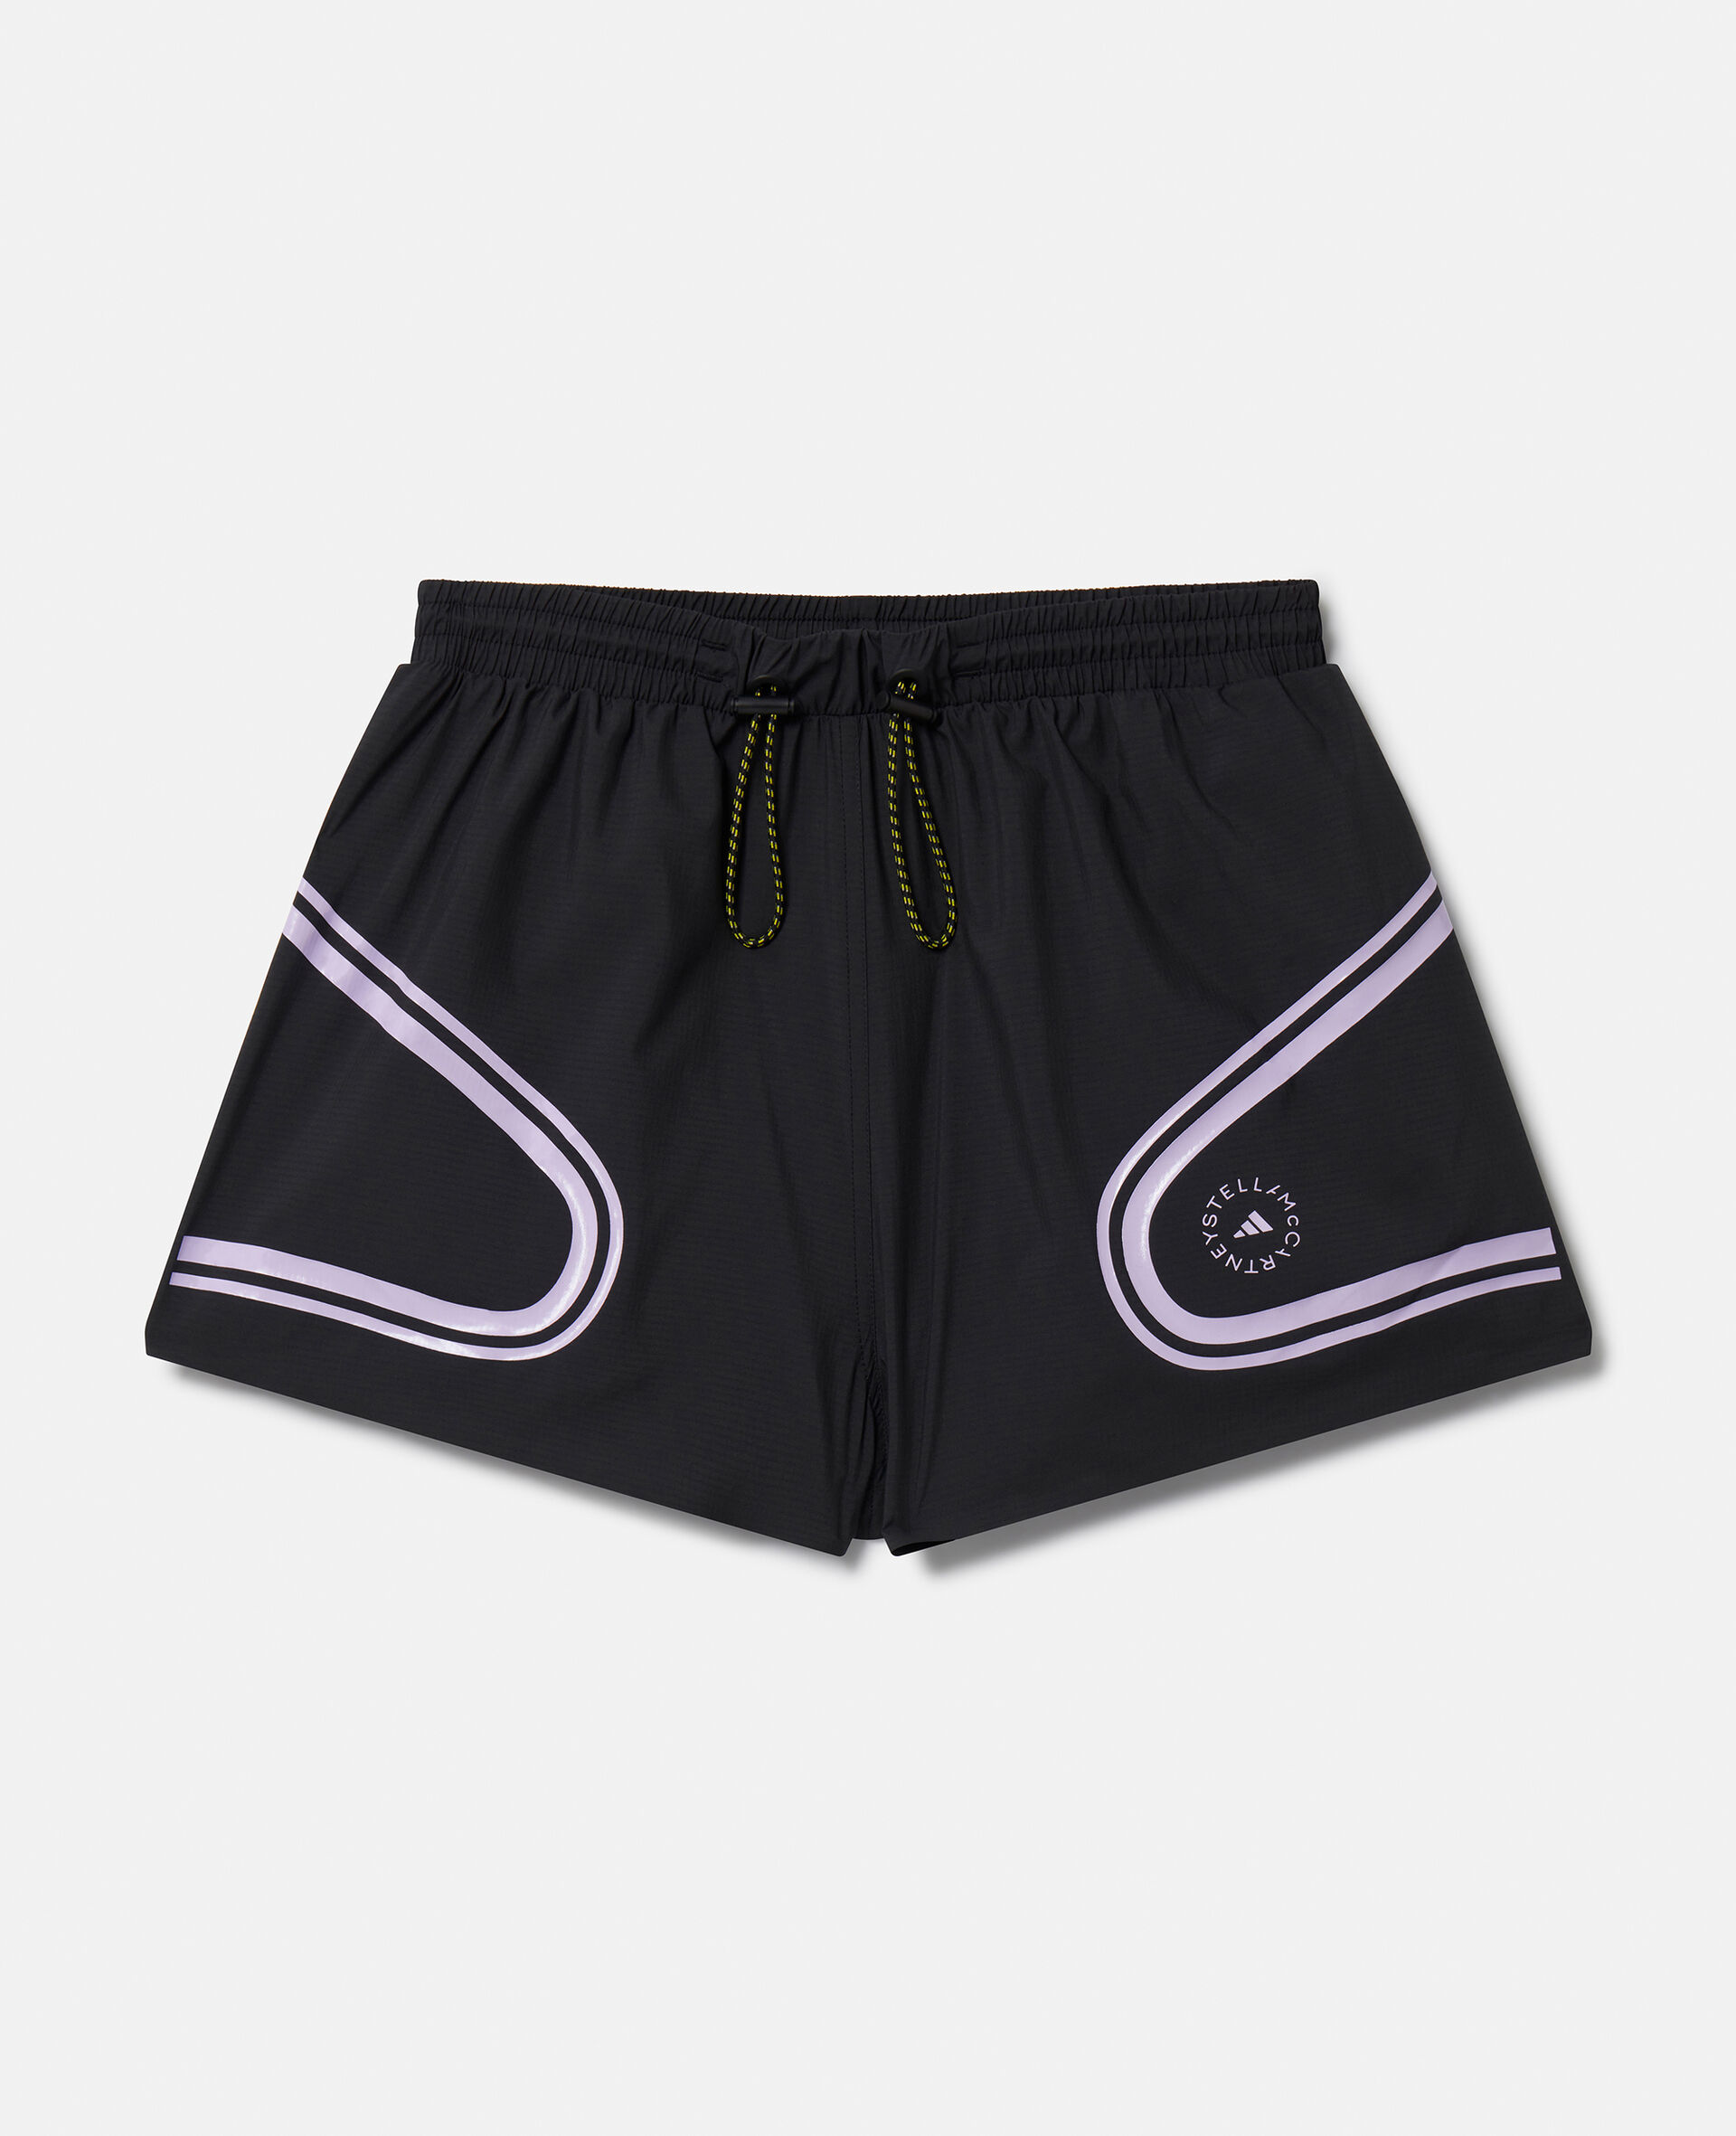 TruePace Running Shorts-Multicoloured-medium